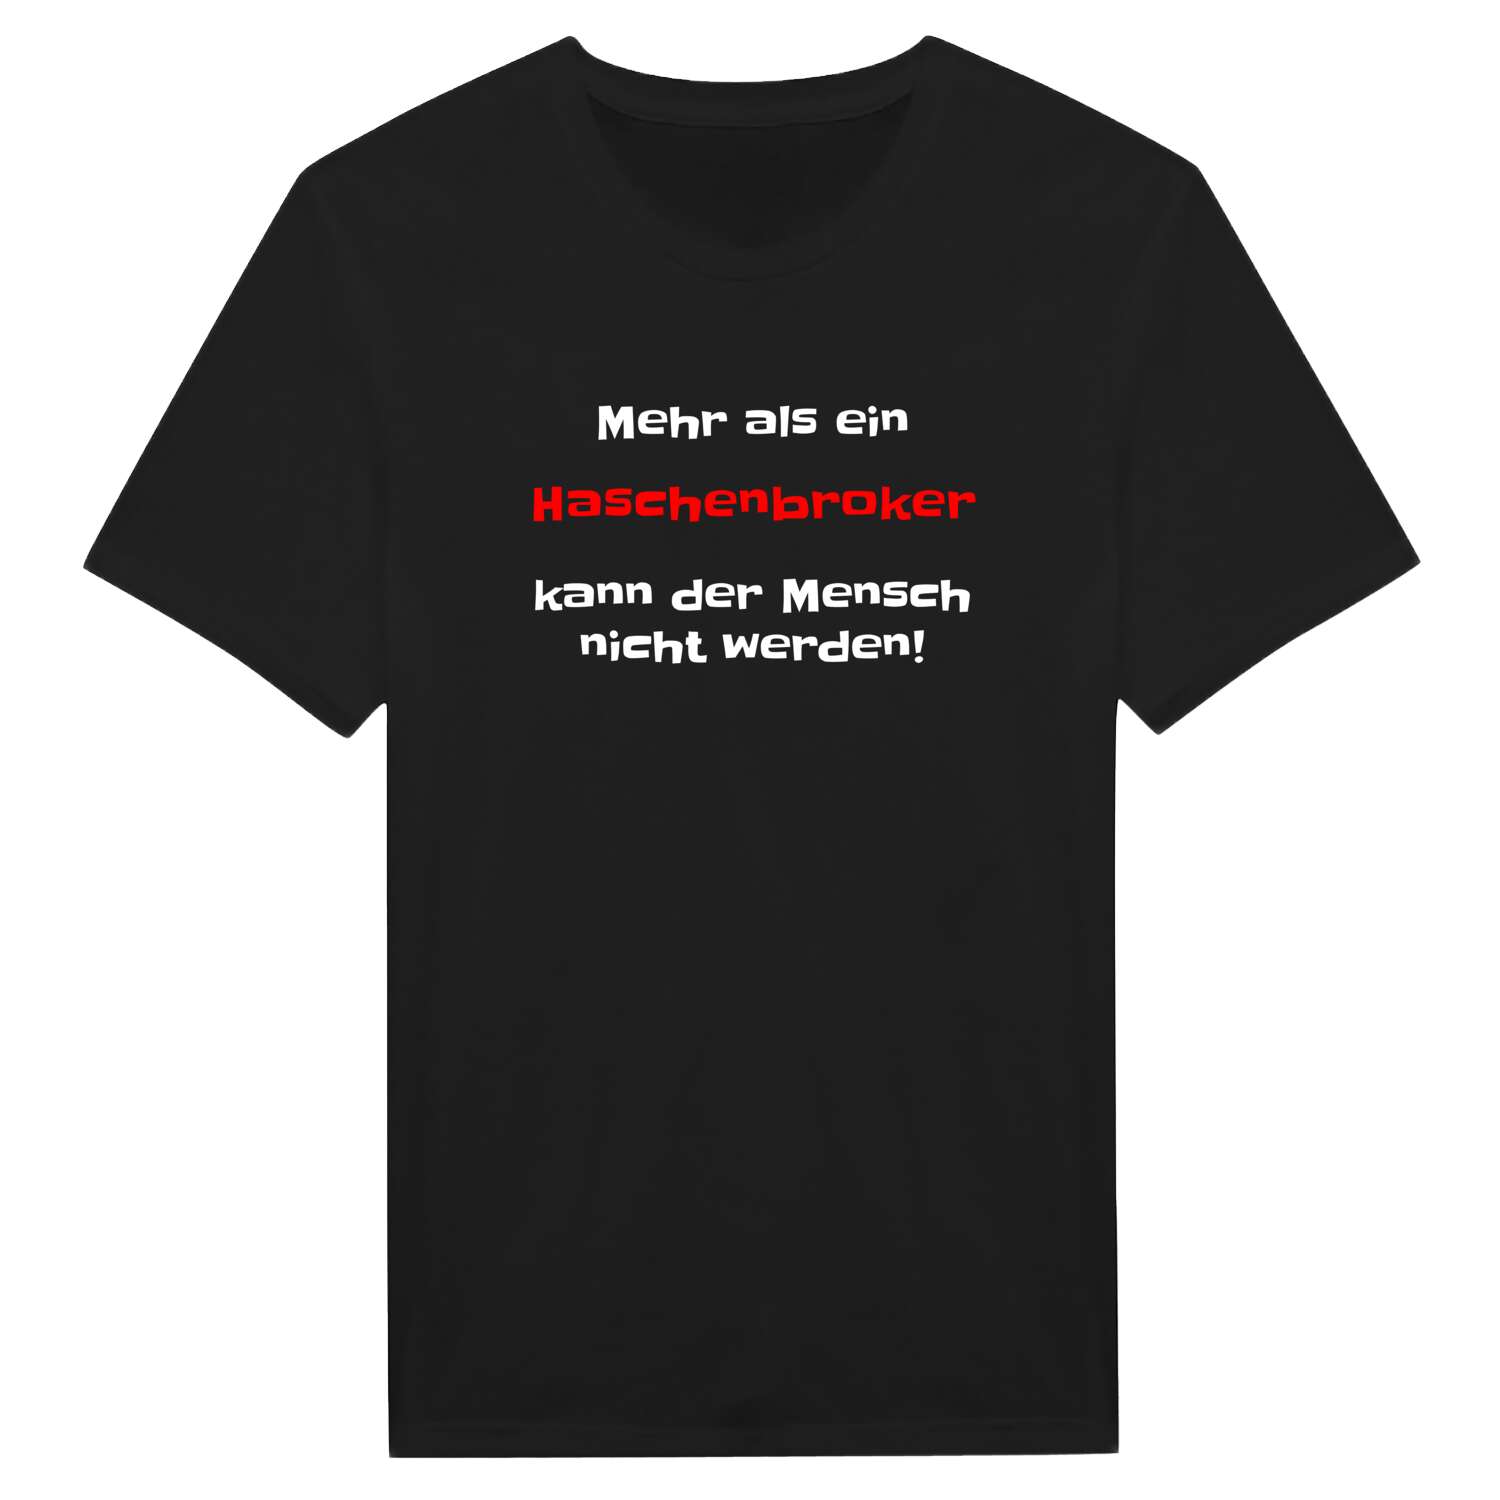 Haschenbrok T-Shirt »Mehr als ein«